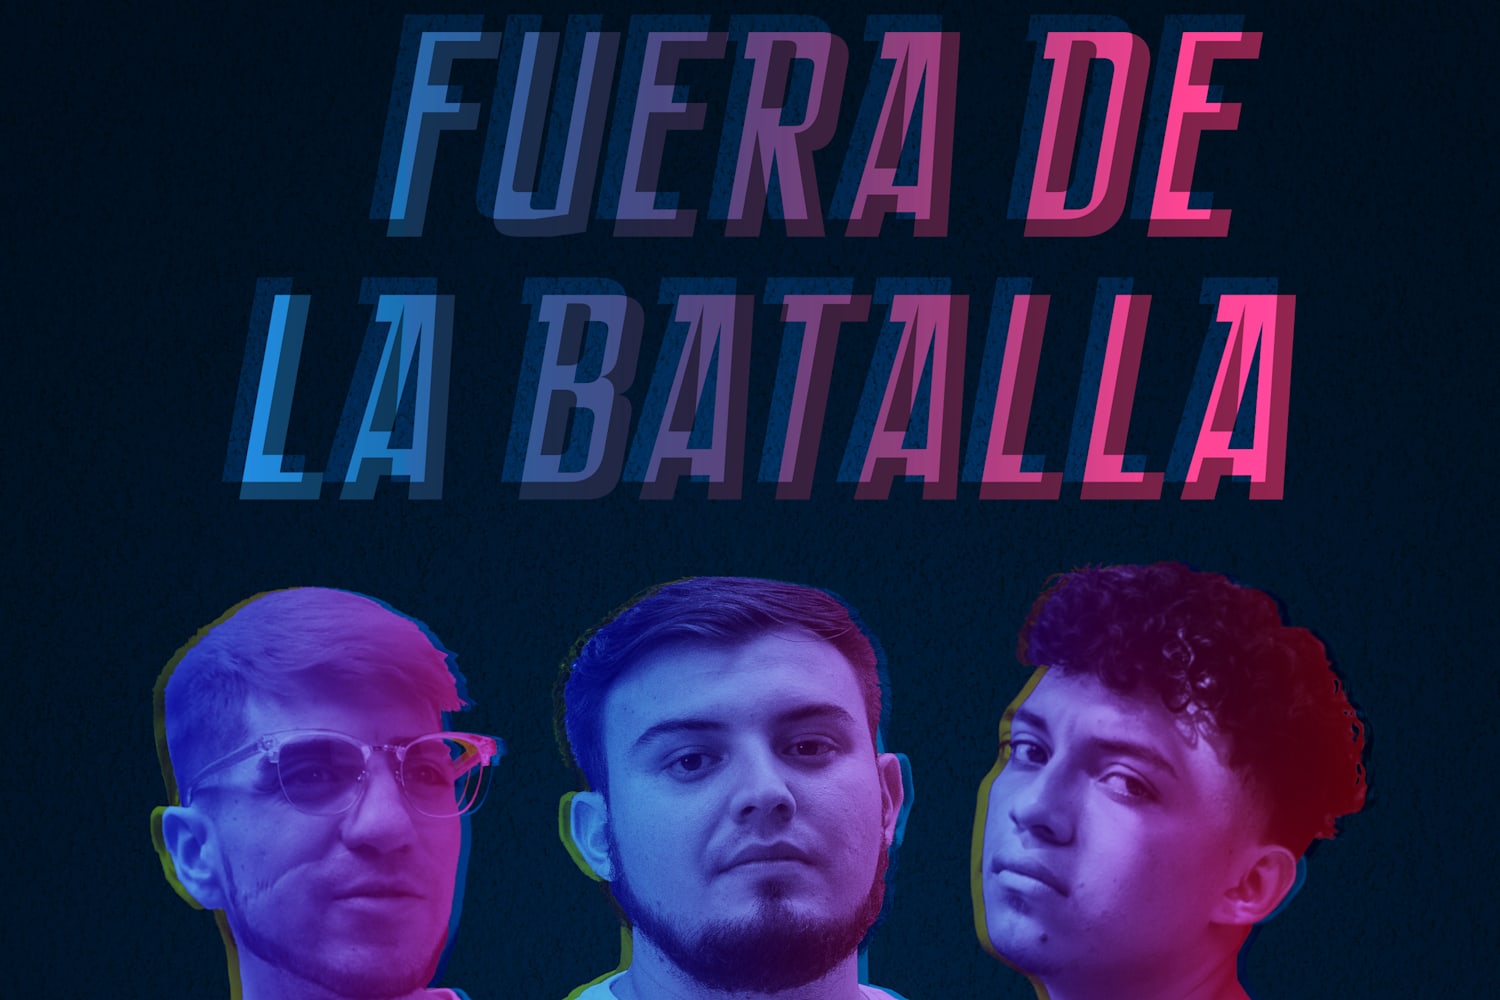 El freestyle latinoaméricano tendrá su miniserie llamada “Fuera de la batalla”